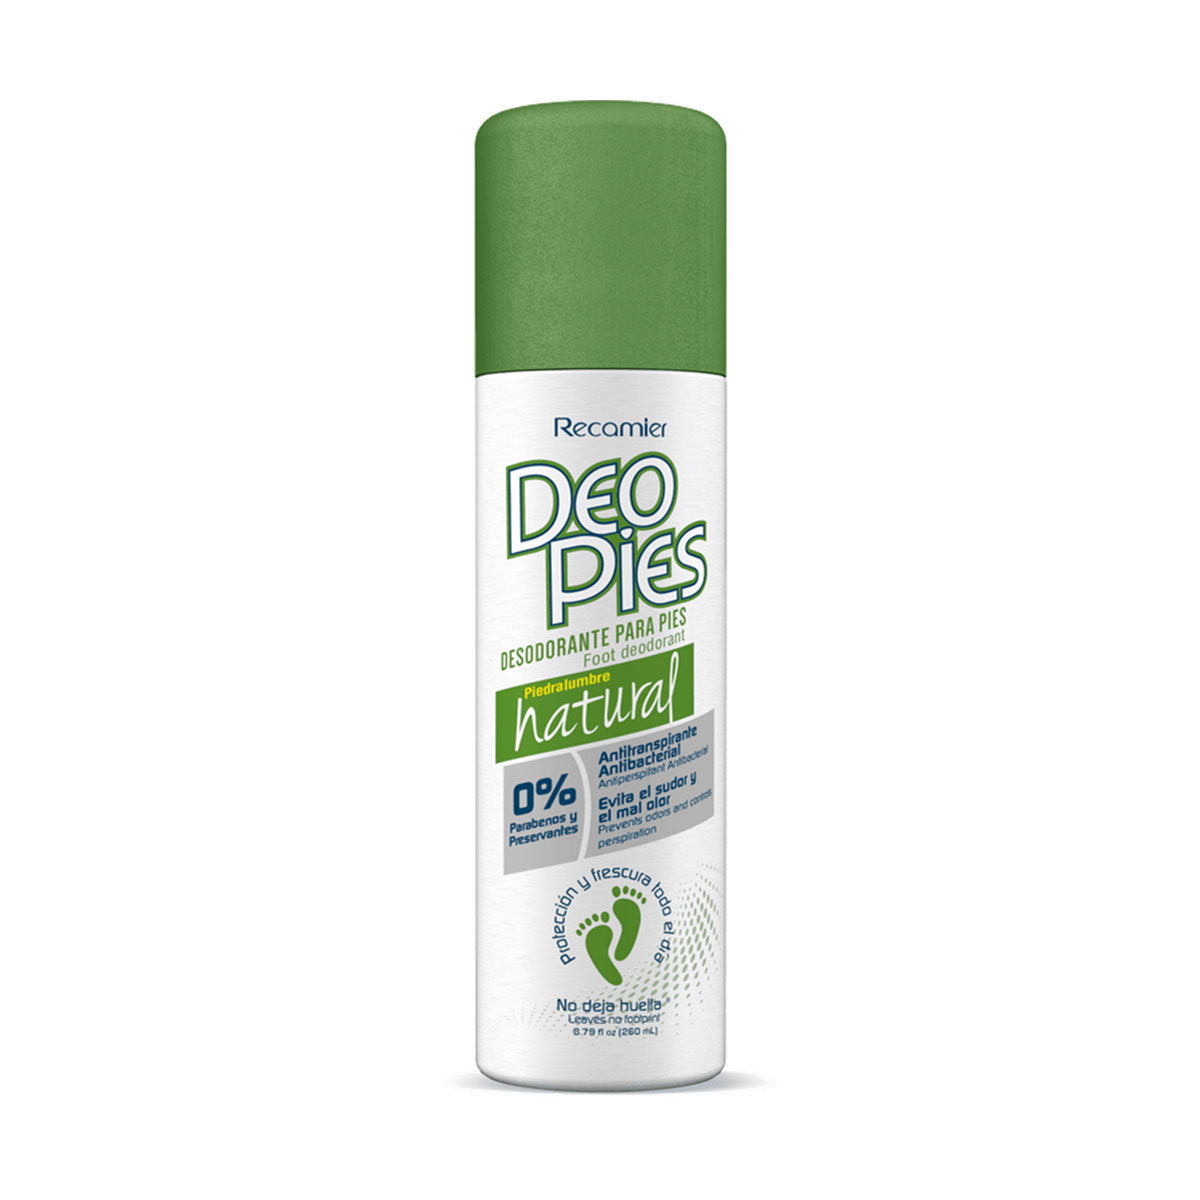 Desodorante en aerosol para pies Deo Pies Natural 24h Recamier 260 ml